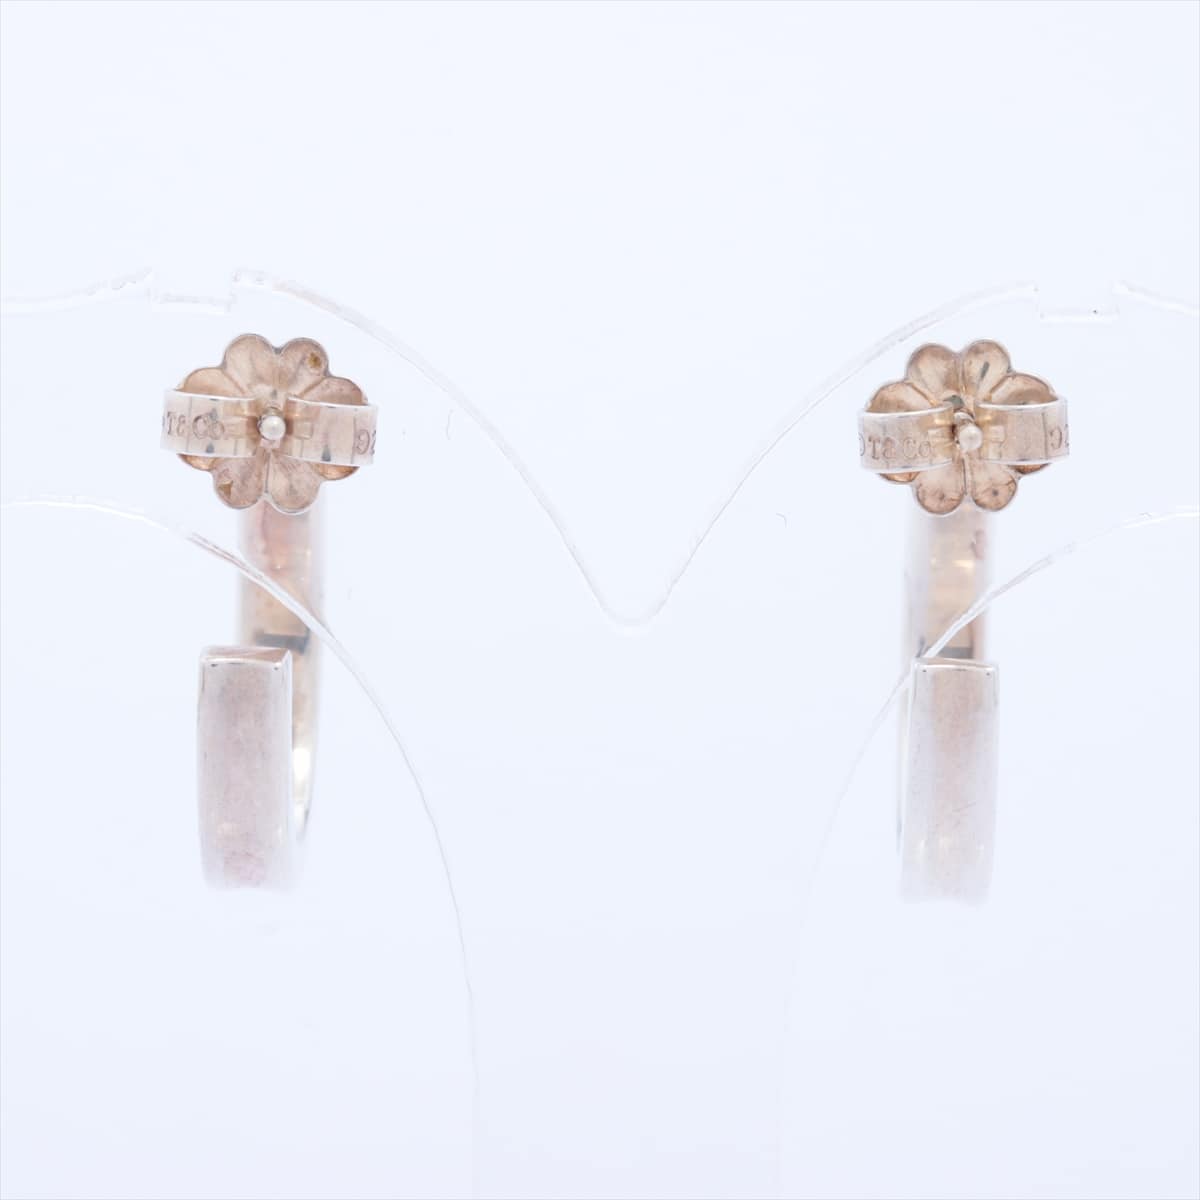 Tiffany 1837 Hoop Piercing jewelry 925 4.4g Silver